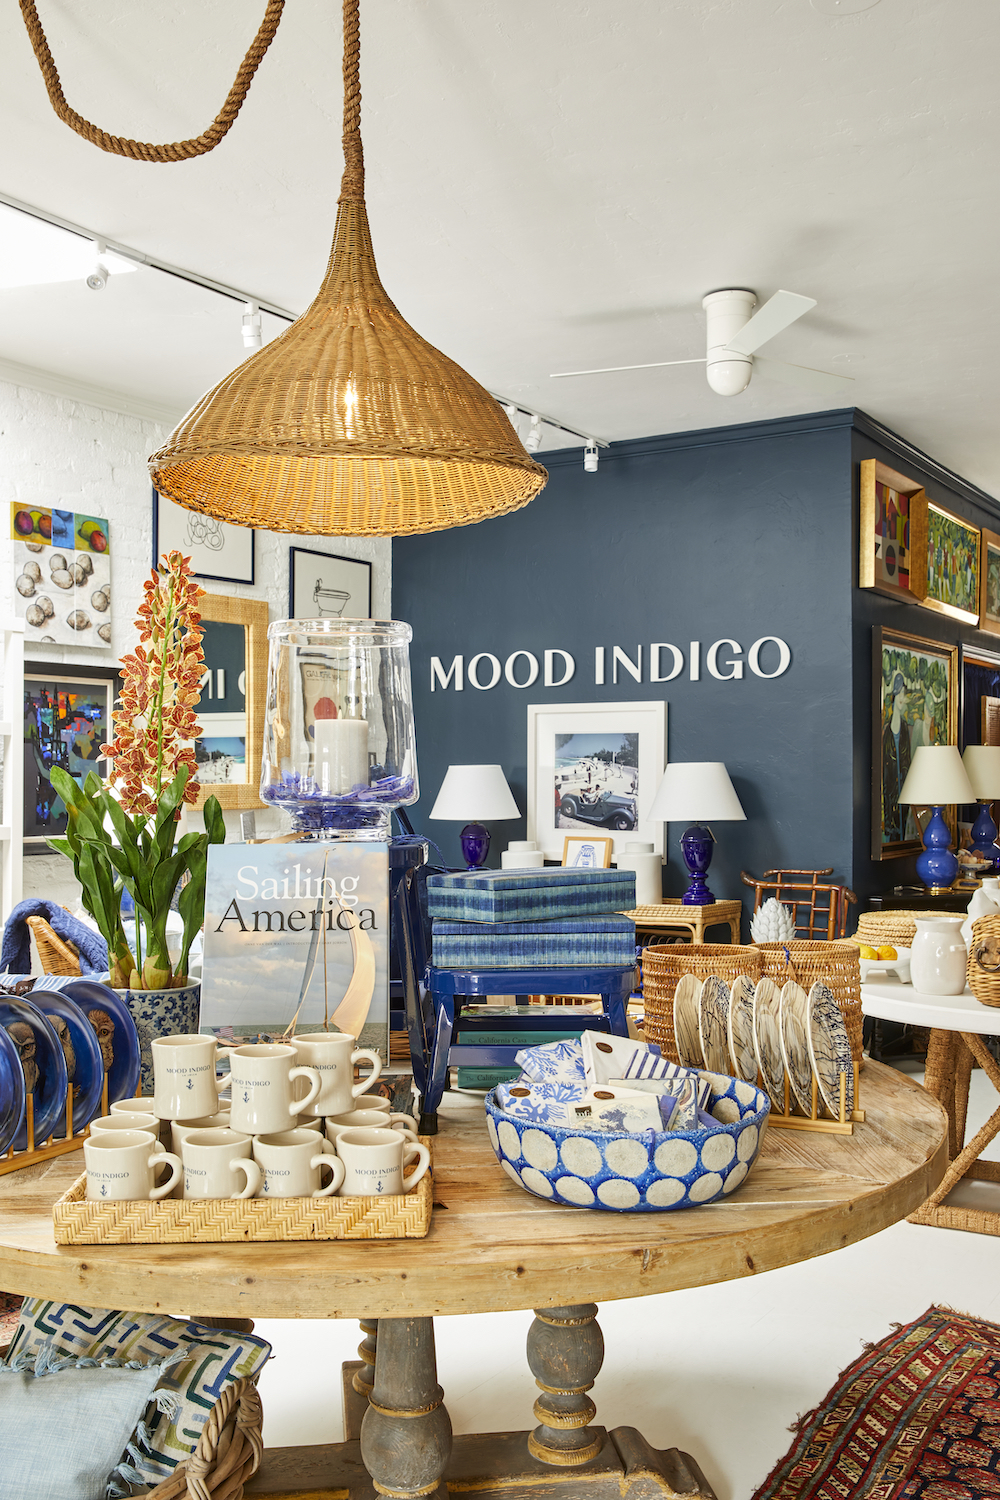 Interior of Mood Indigo interior decor shop in La Jolla, San Diego